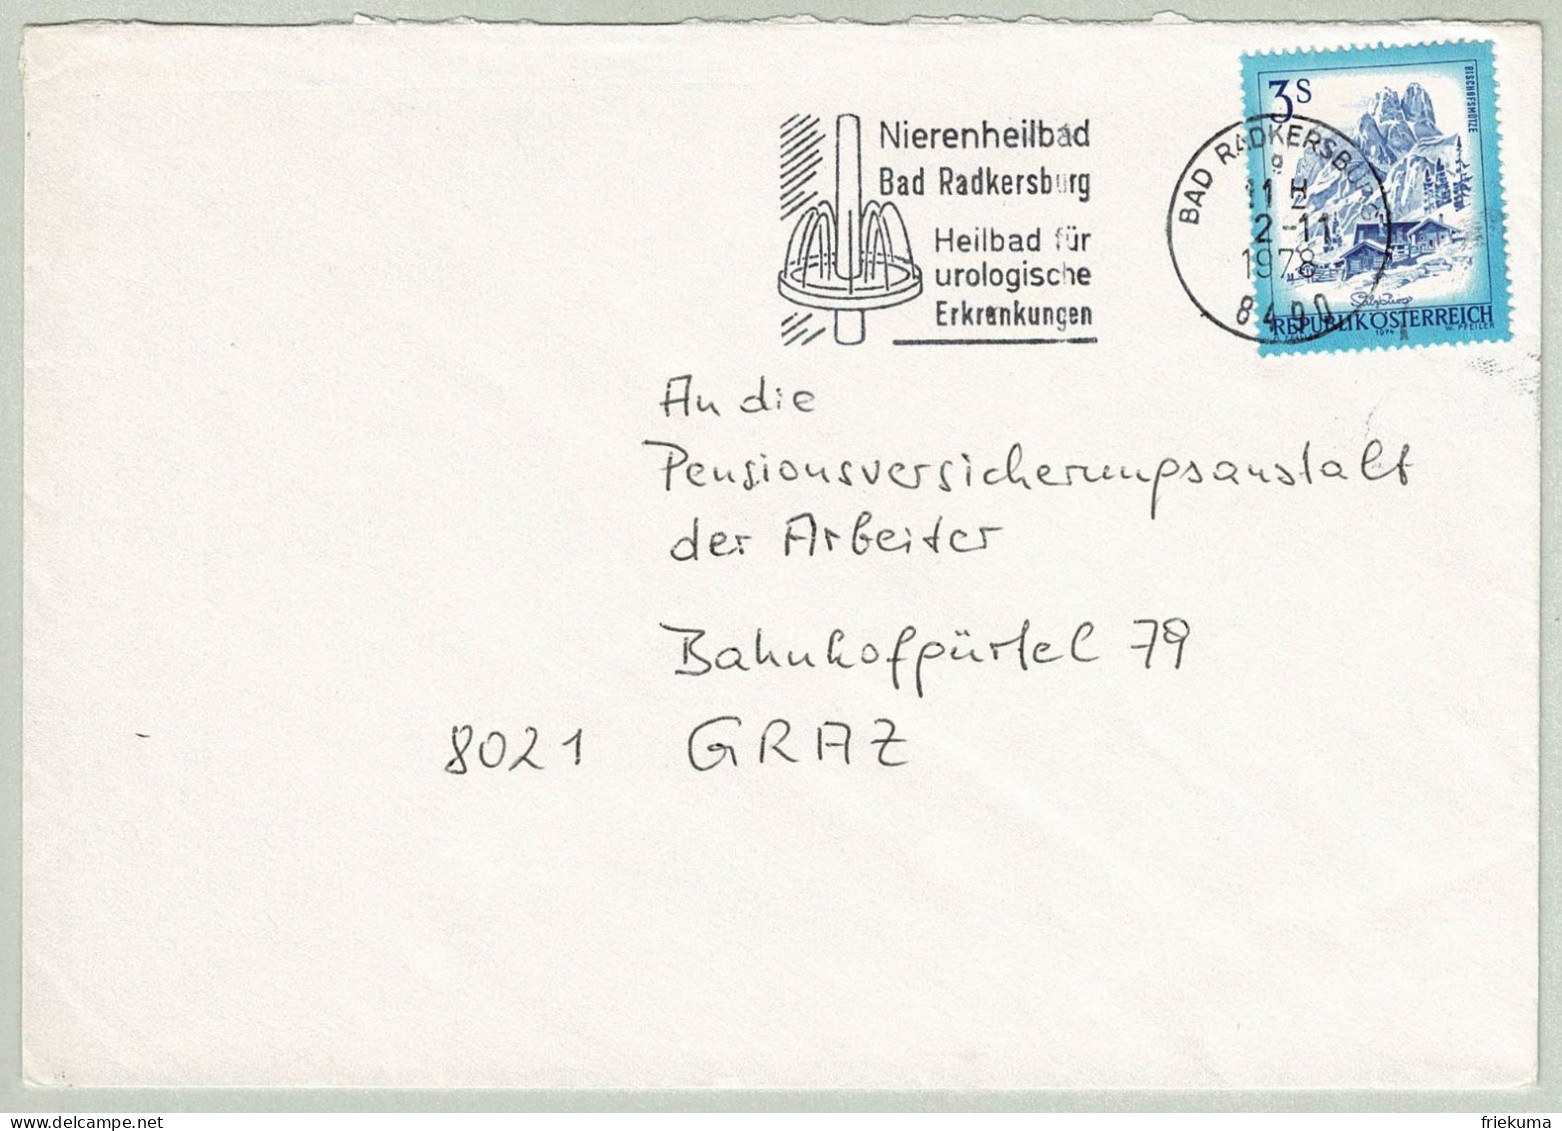 Oesterreich / Austria 1978, Brief Bad Radkersburg - Graz, Nierenheilbad, Urologische Erkrankungen - Bäderwesen